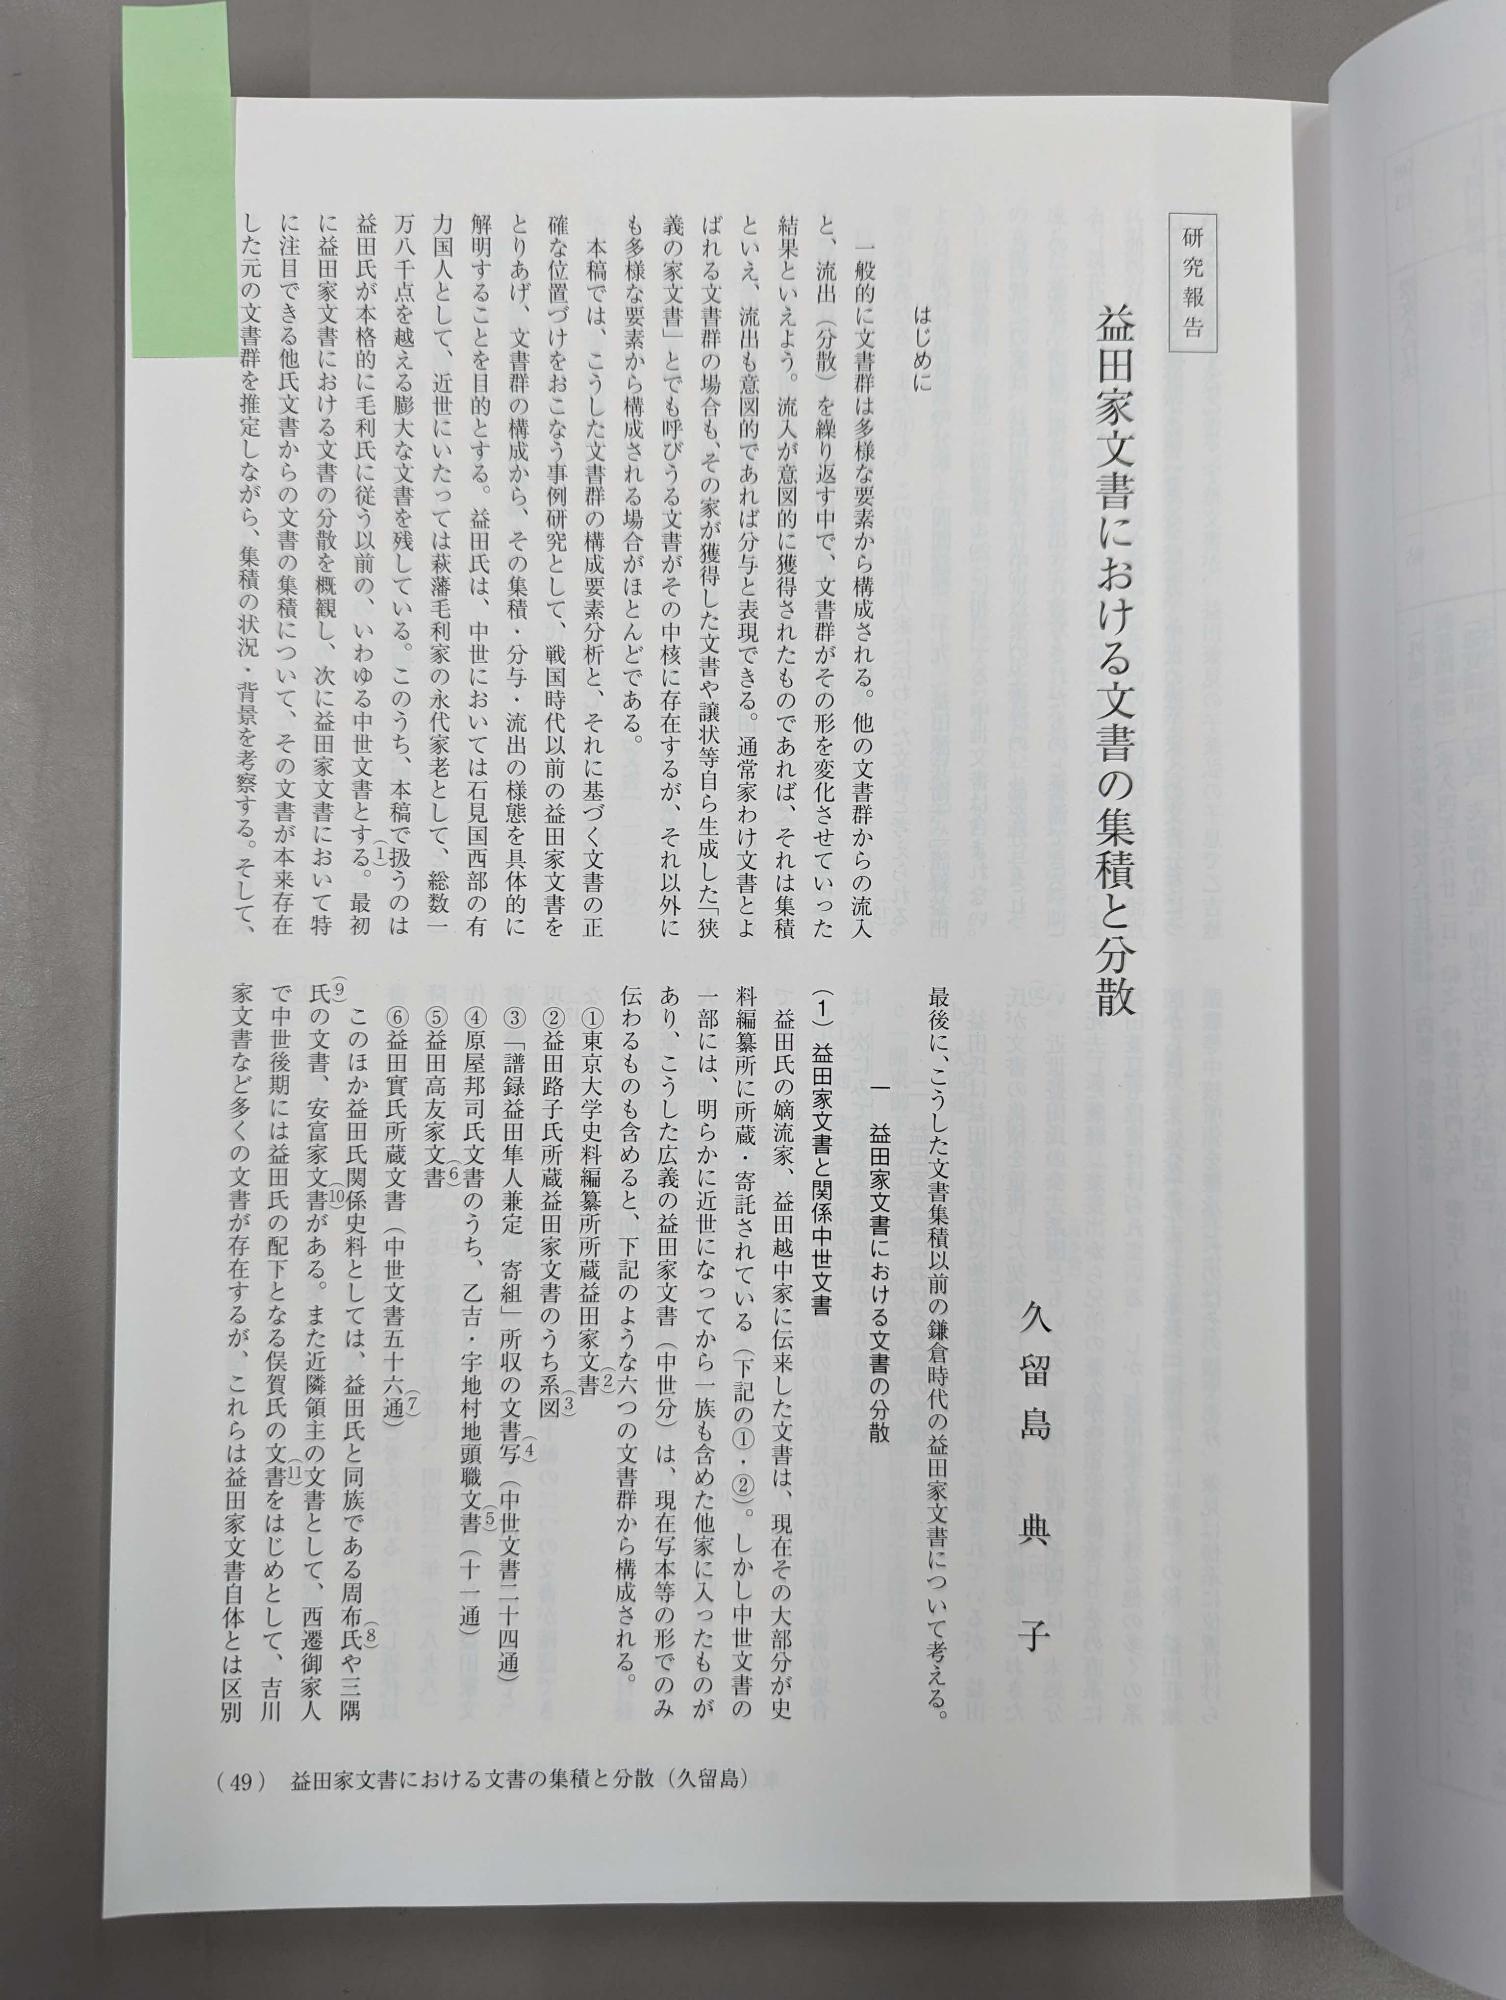 久留島典子「益田家文書における文書の集積と分散」1ページ目